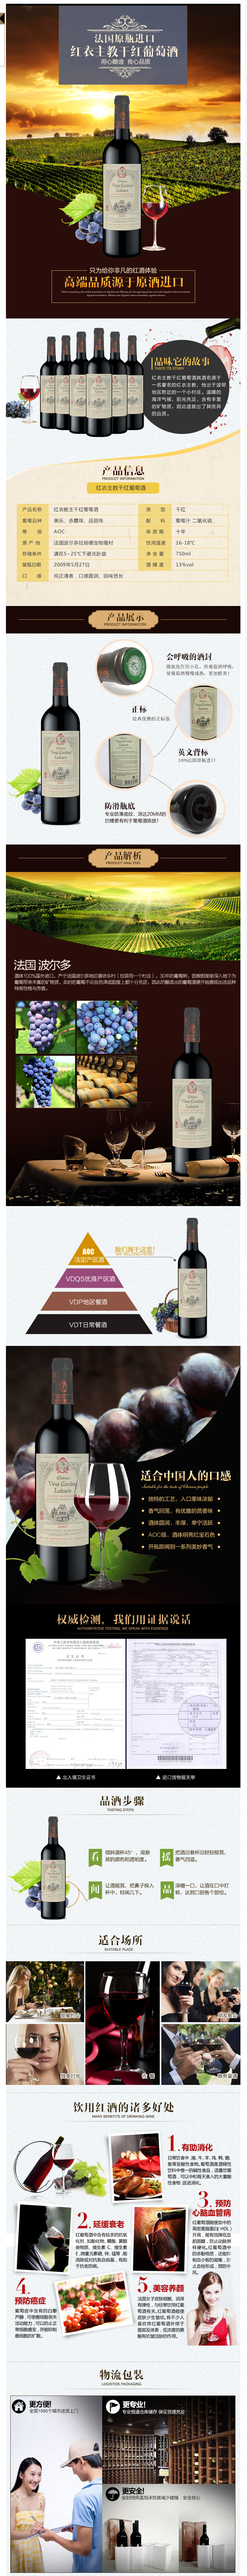 淘宝美工许飞法国进口红酒，干红葡萄酒，起泡酒，作品